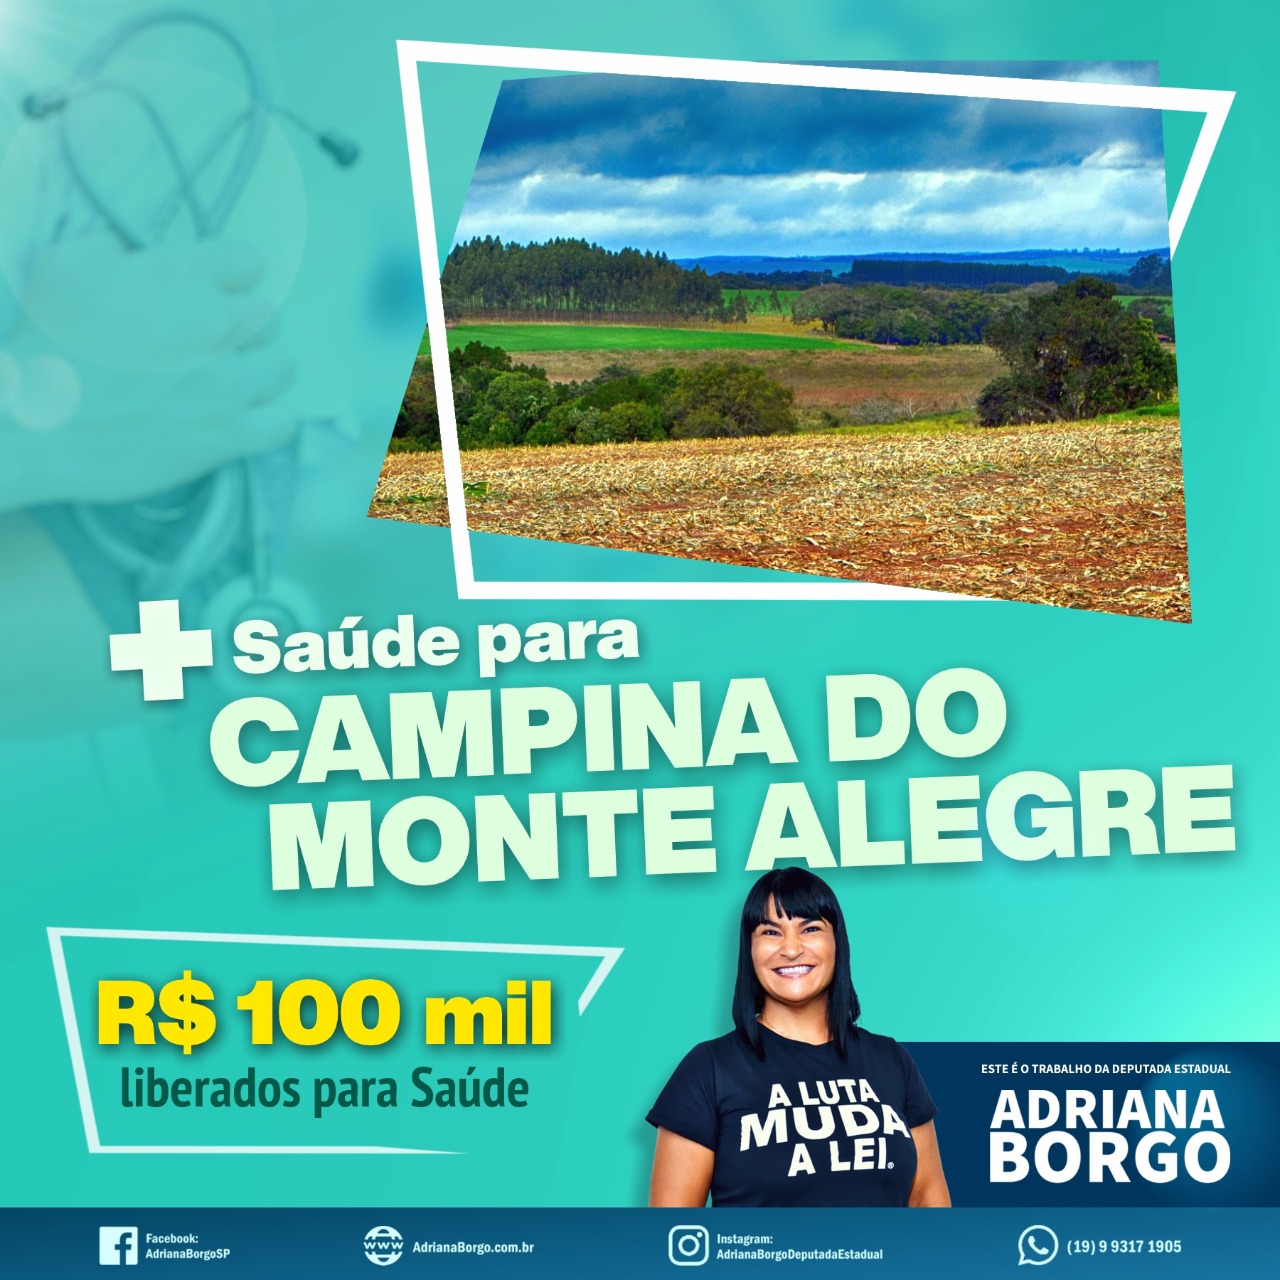 Adriana Borgo - Emendas - Saude para Campina do Monte Alegre